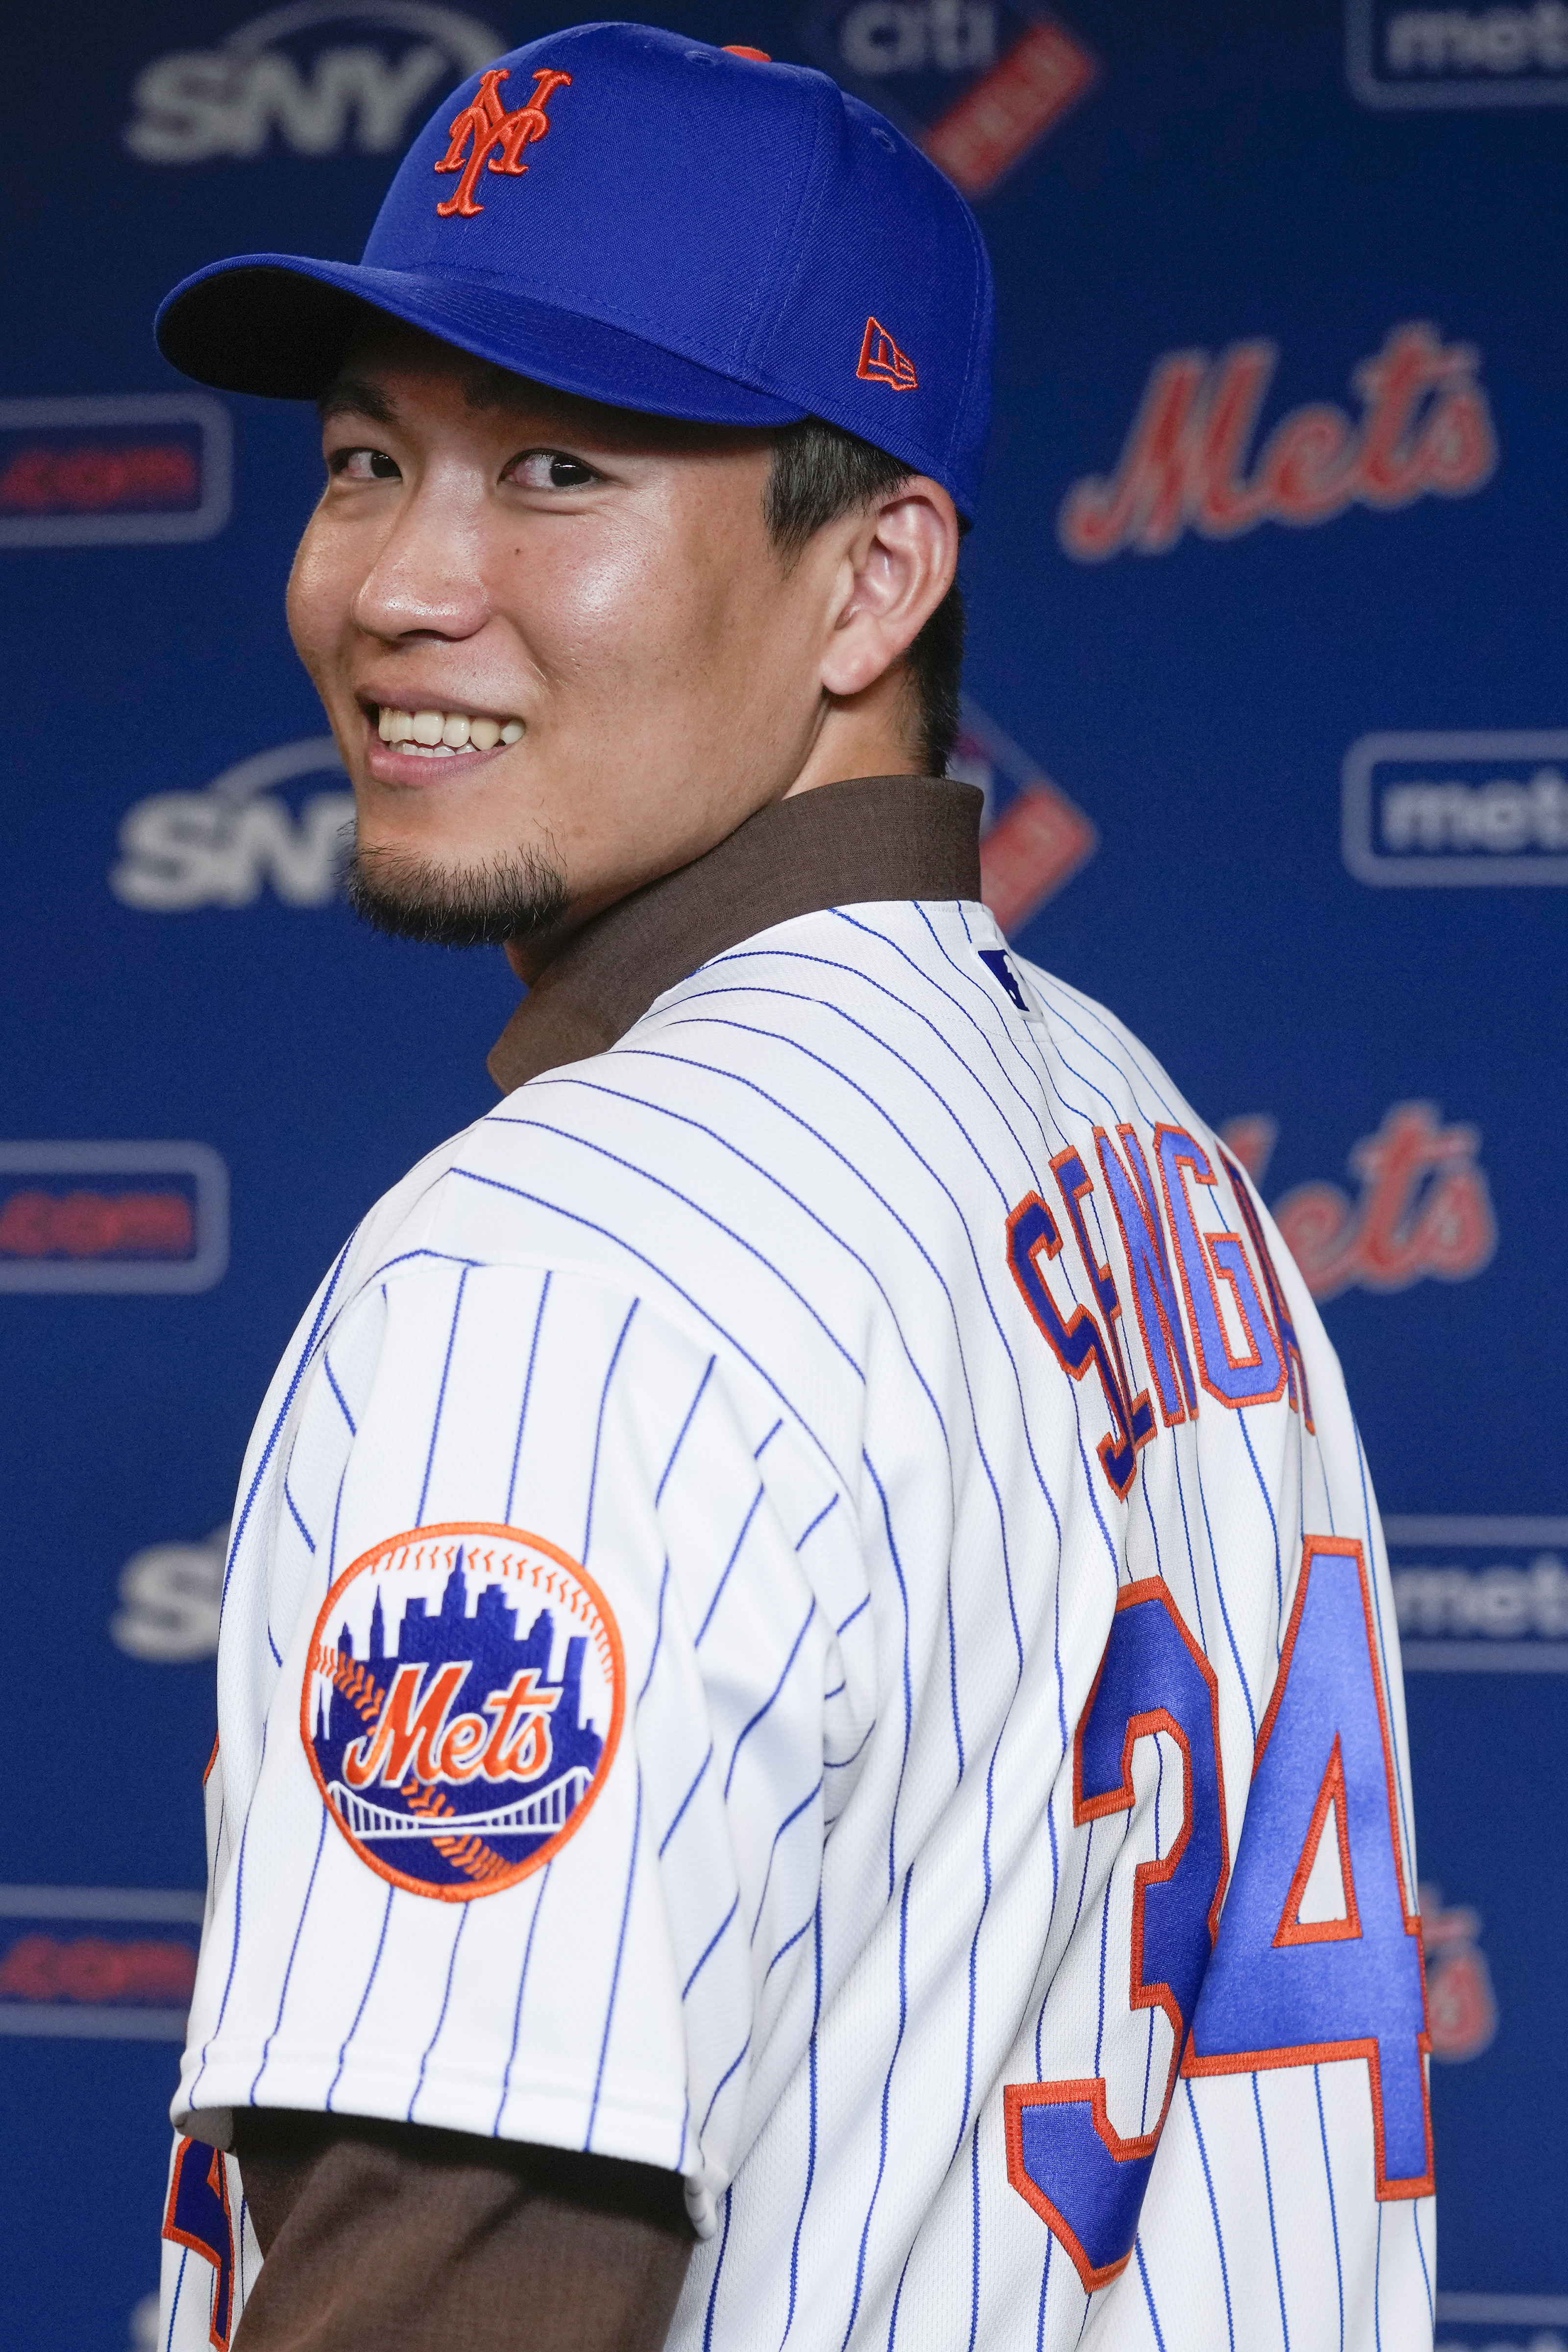 NY Mets need to sign Japanese star Kodai Senga